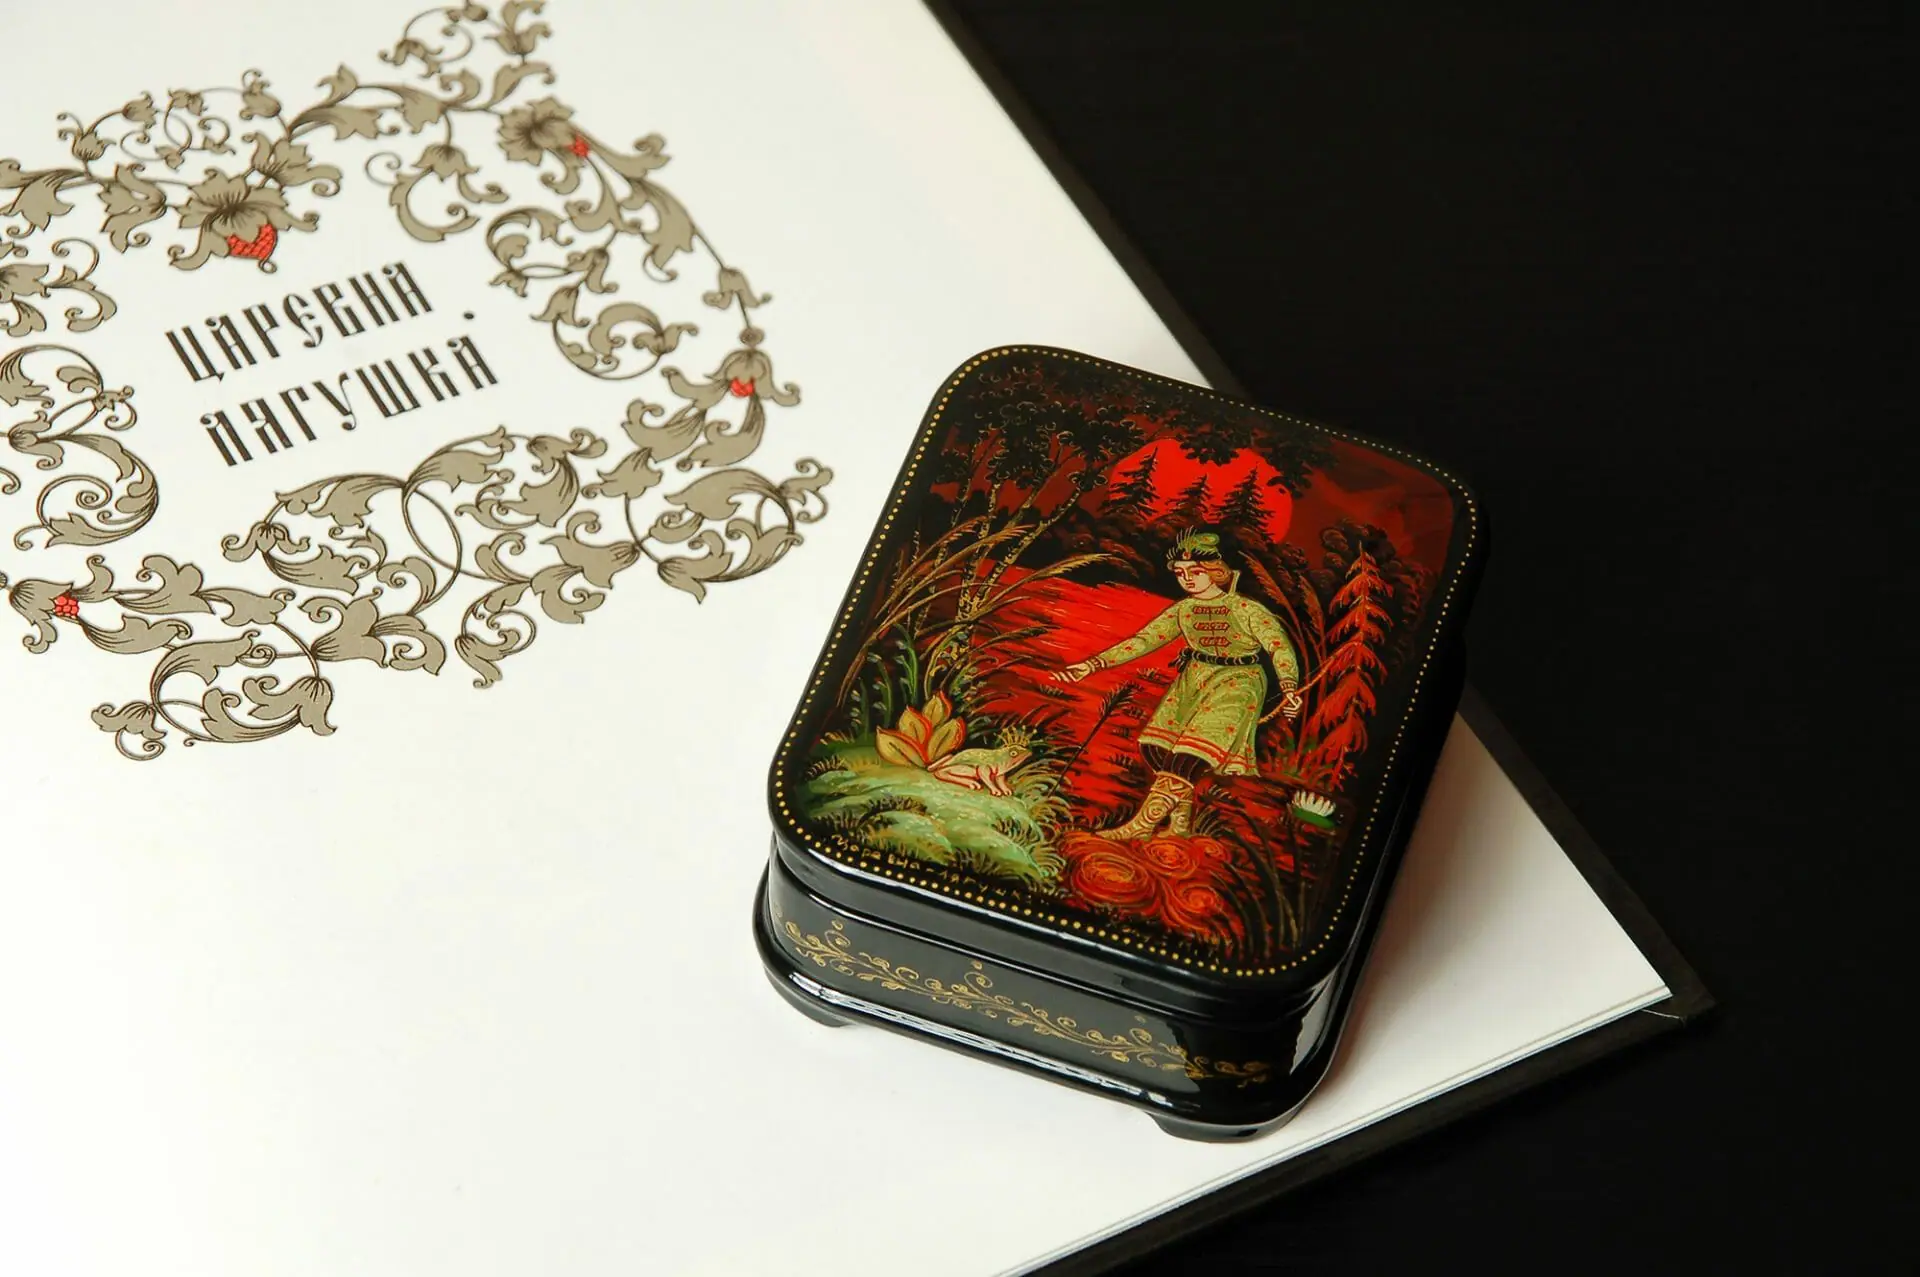 Tiny Lacquer Box Fairy Tale small unique gift ring box